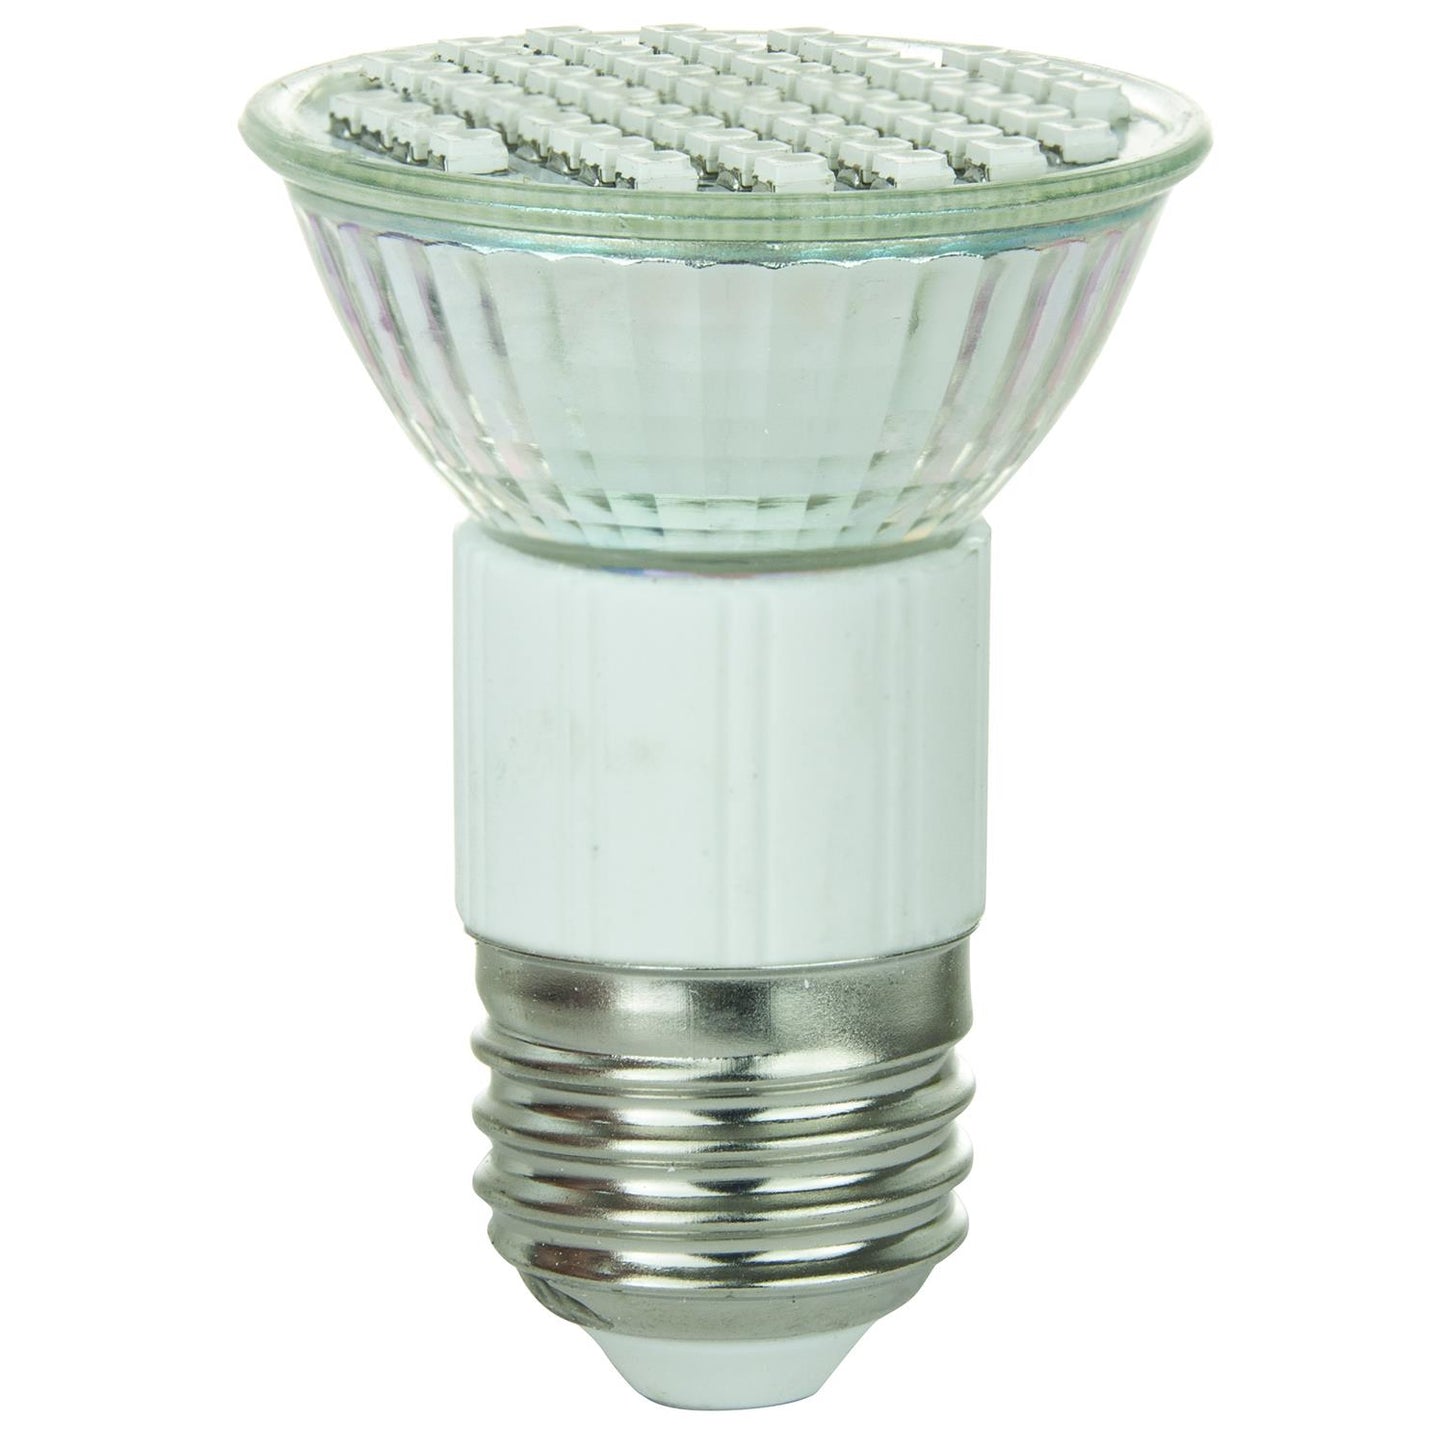 Sunlite LED JDR MR16 2.8W (25W Equivalent) Light Bulb Medium (E26) Base, Yellow